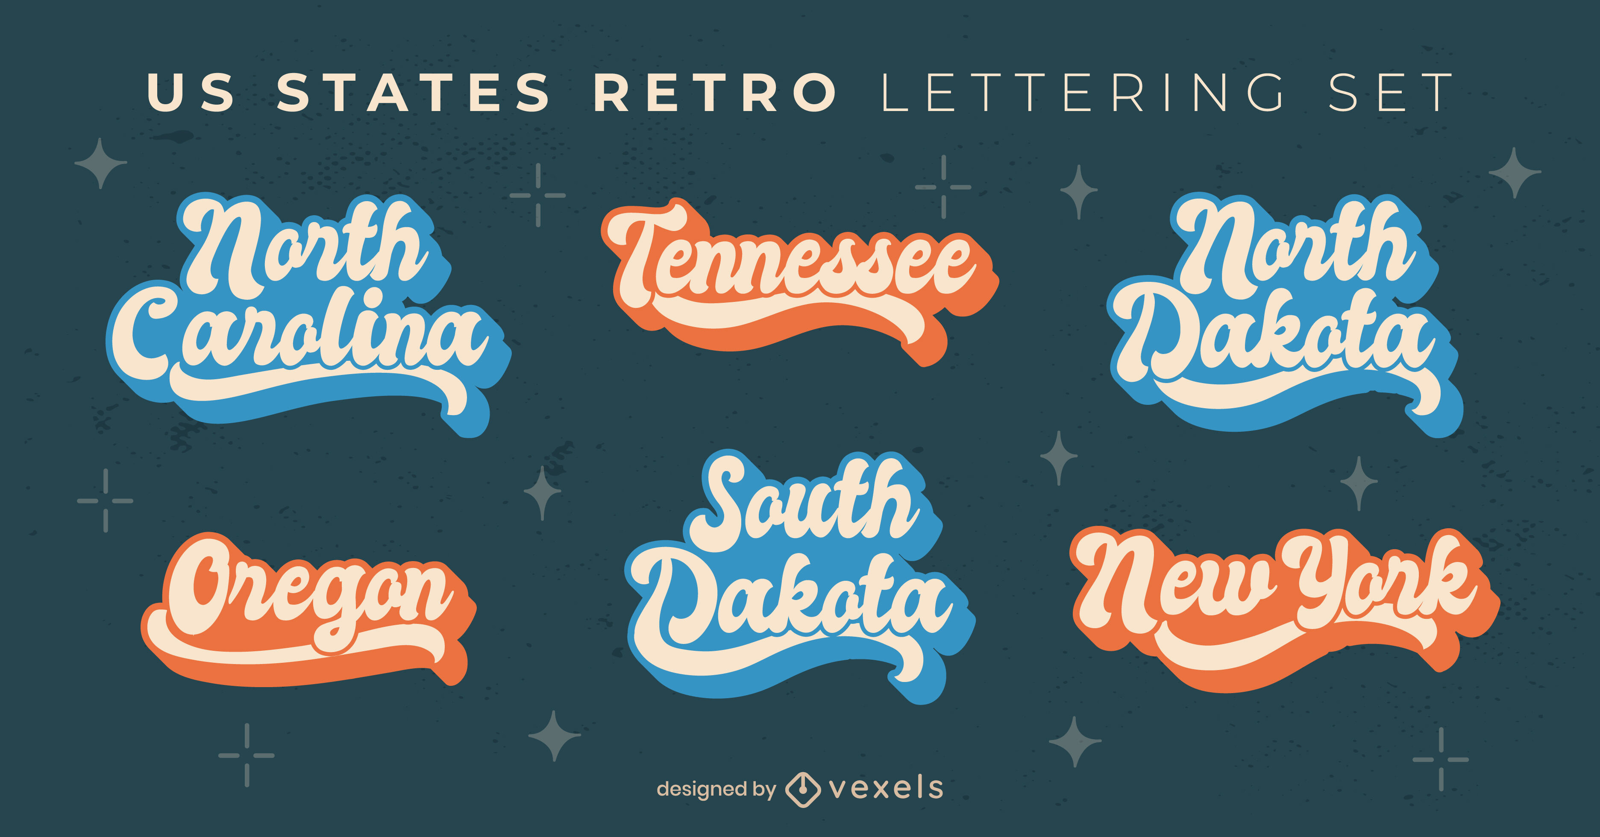 USA States Vintage Lettering Set Vector Download